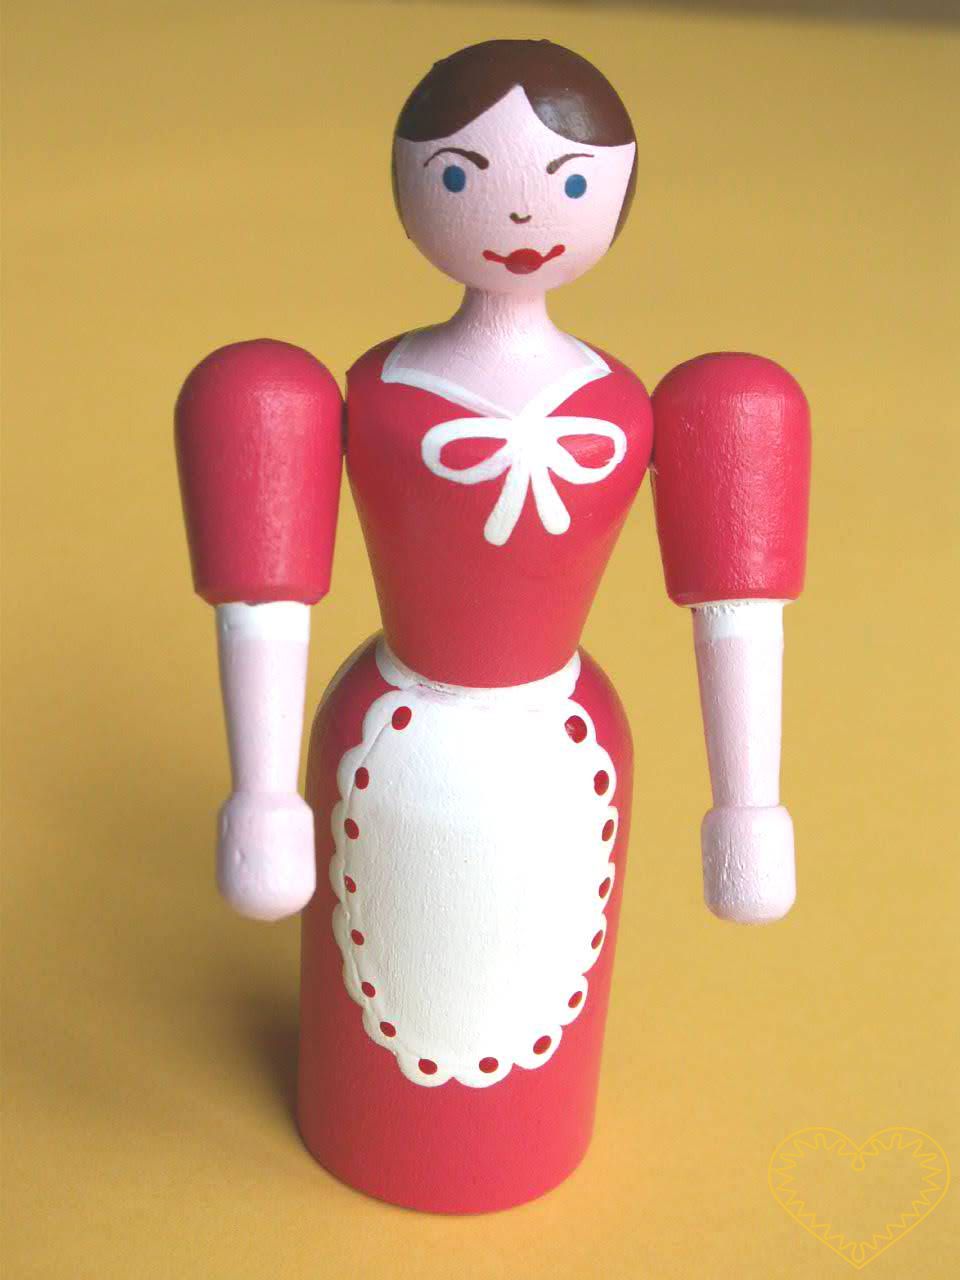 Malá dřevěná panenka. Krásně malovaný suvenýr vycházející ze vzorů tradičních dětských dřevěných hraček. Soustružená panenka má pohyblivé ruce ve směru nahoru - dolu.